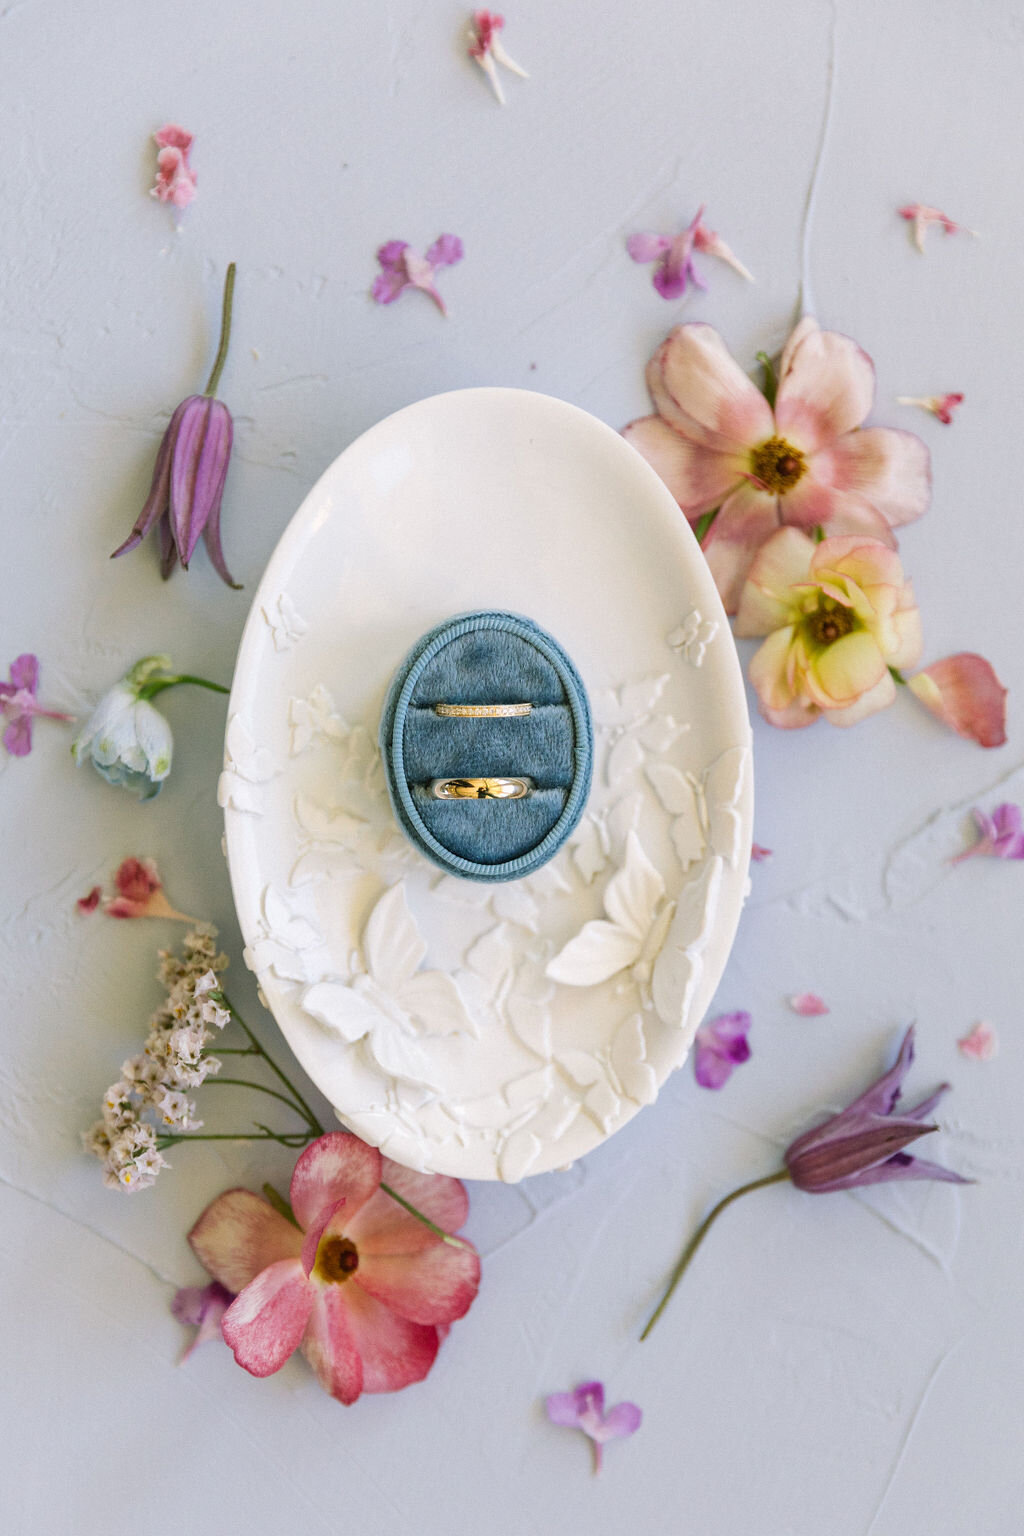 Velvet blue ringbox on white plaster dish with pink flower flat lay